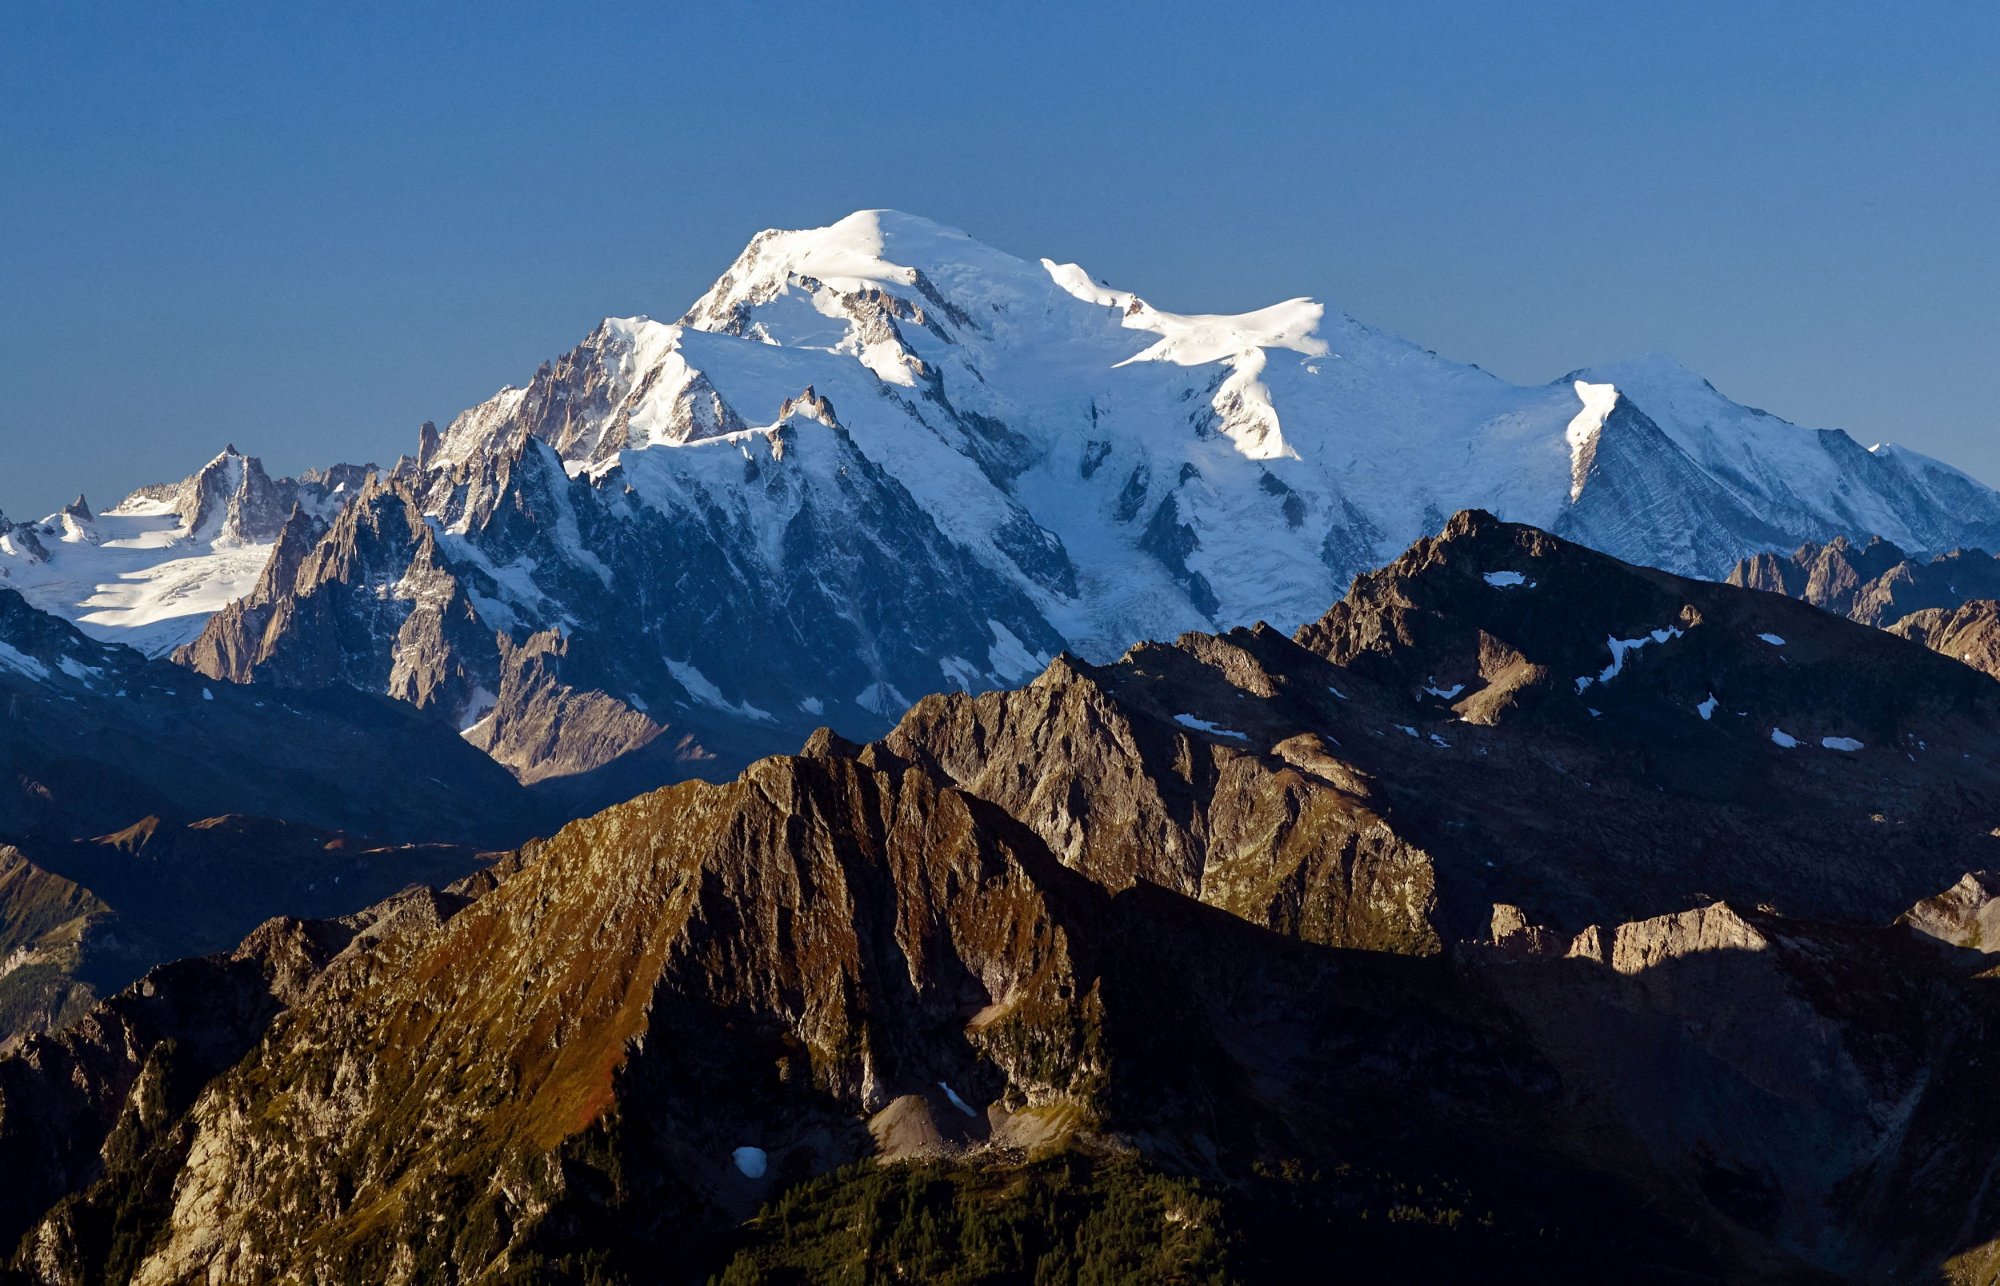 Μον Μπλαν: Το ψηλότερο βουνό της Ευρώπης κόντυνε 2 μέτρα